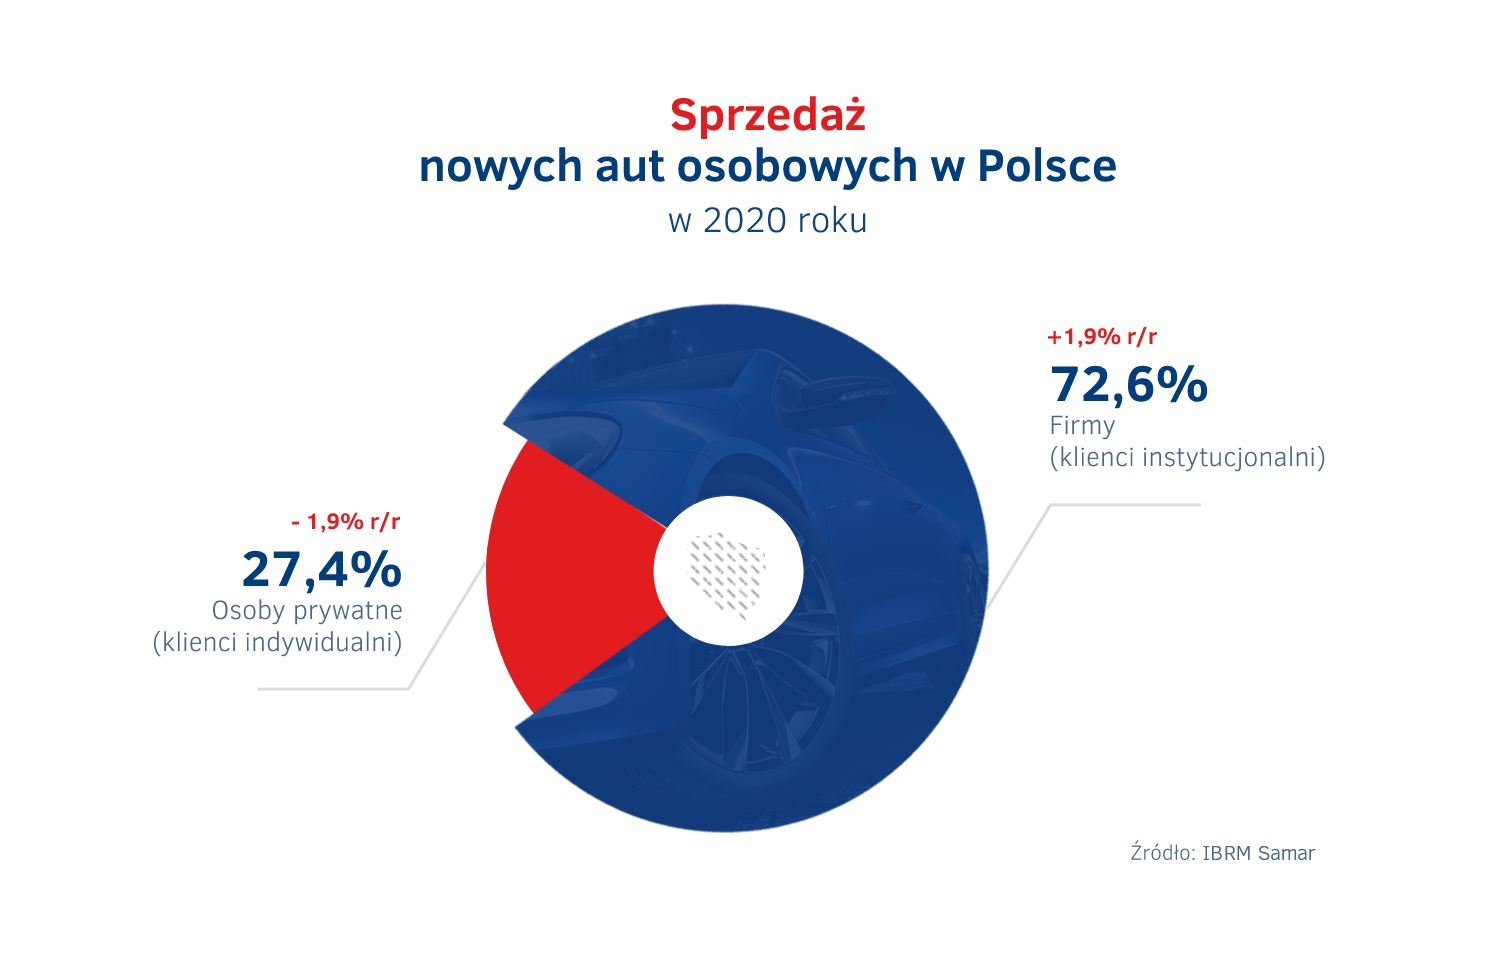 Struktura sprzedazy nowych aut w Polsce 2020 – firmy vs osoby prywatne